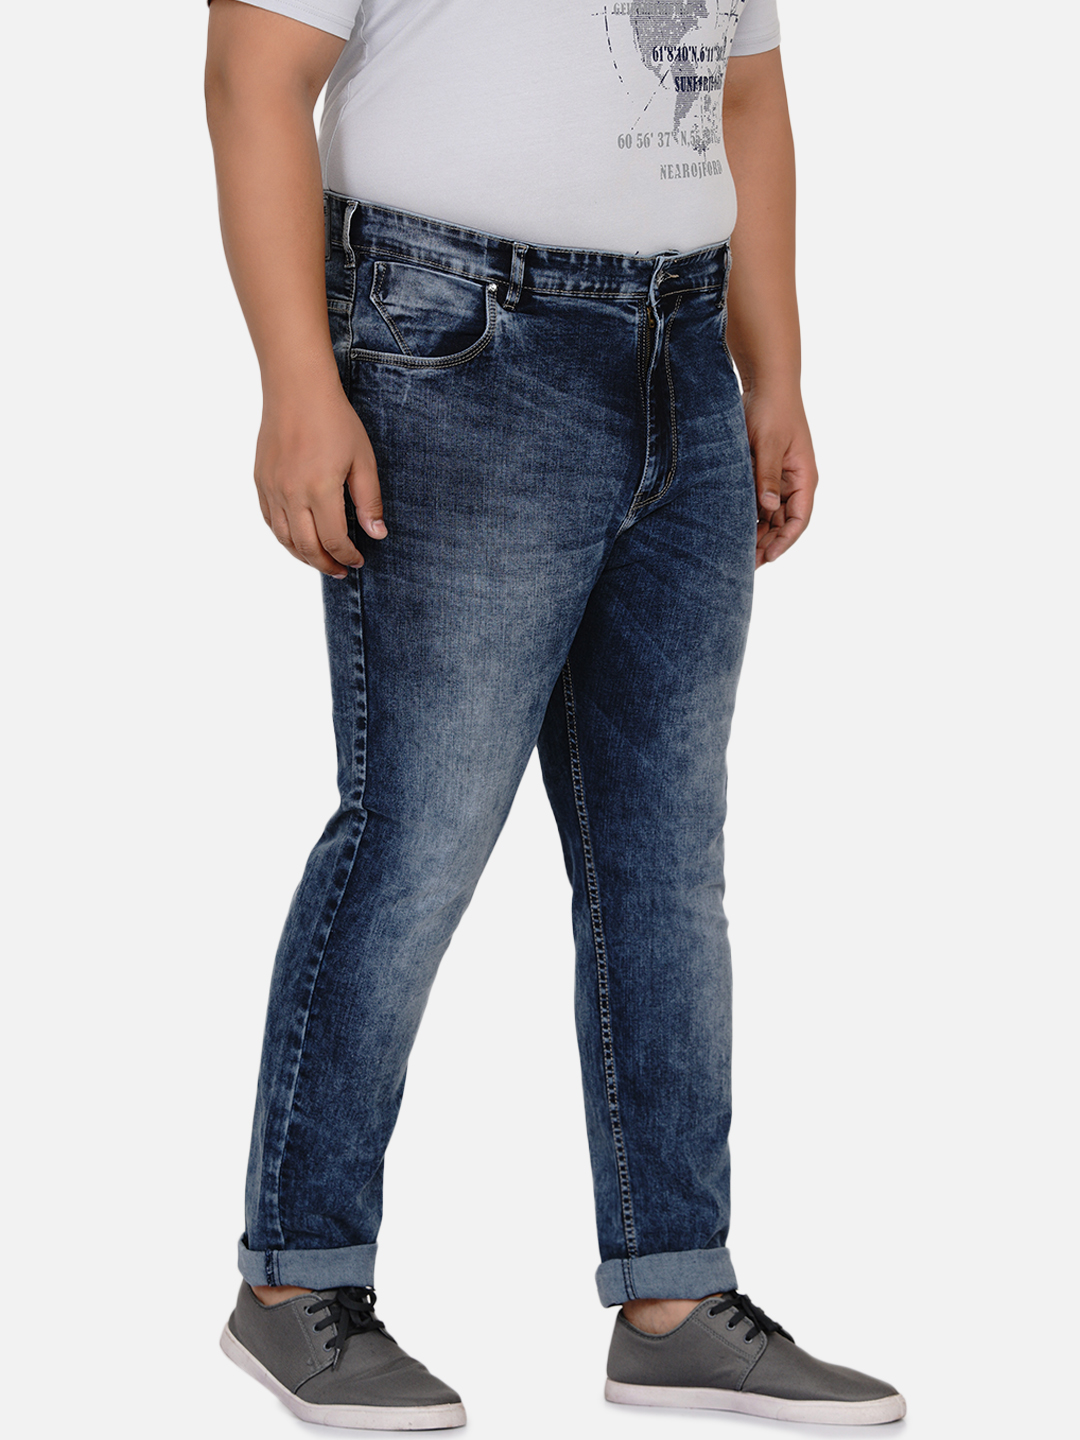 affordables/jeans/EJPJ25001/ejpj25001-4.jpg